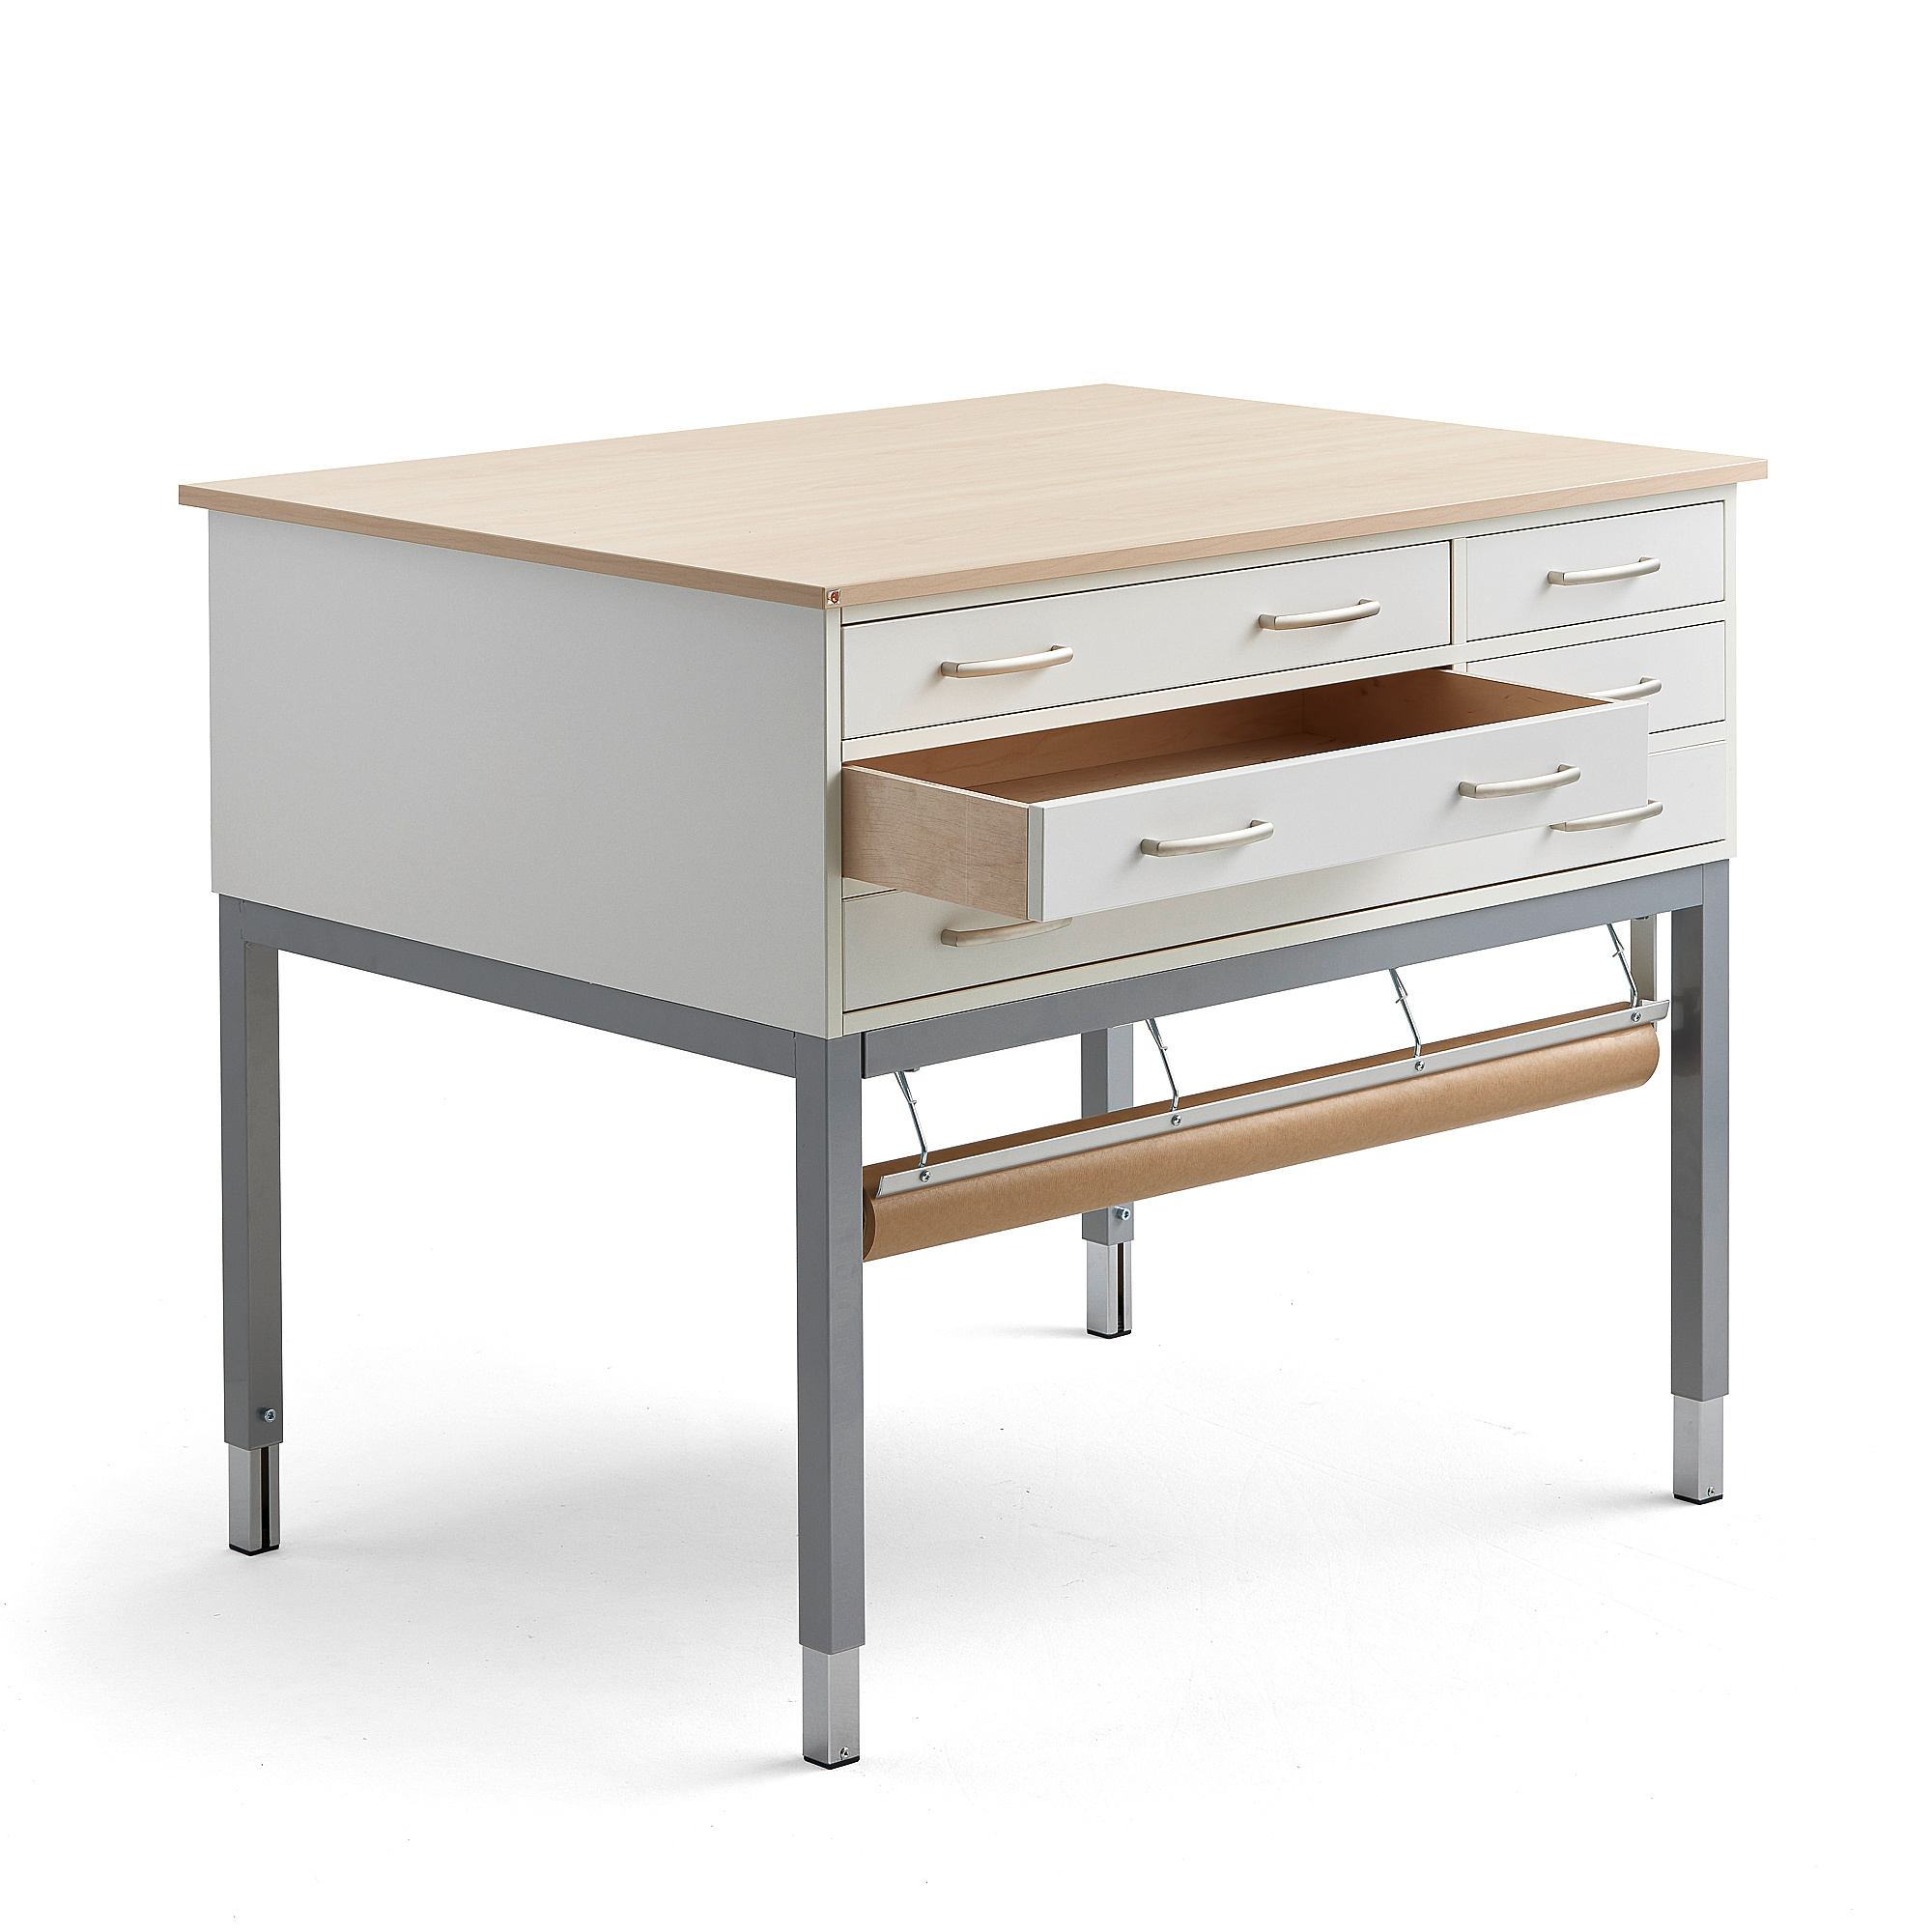 E-shop Stôl na balenie s držiakom na papier, 1200x900x900 mm, breza, strieborná